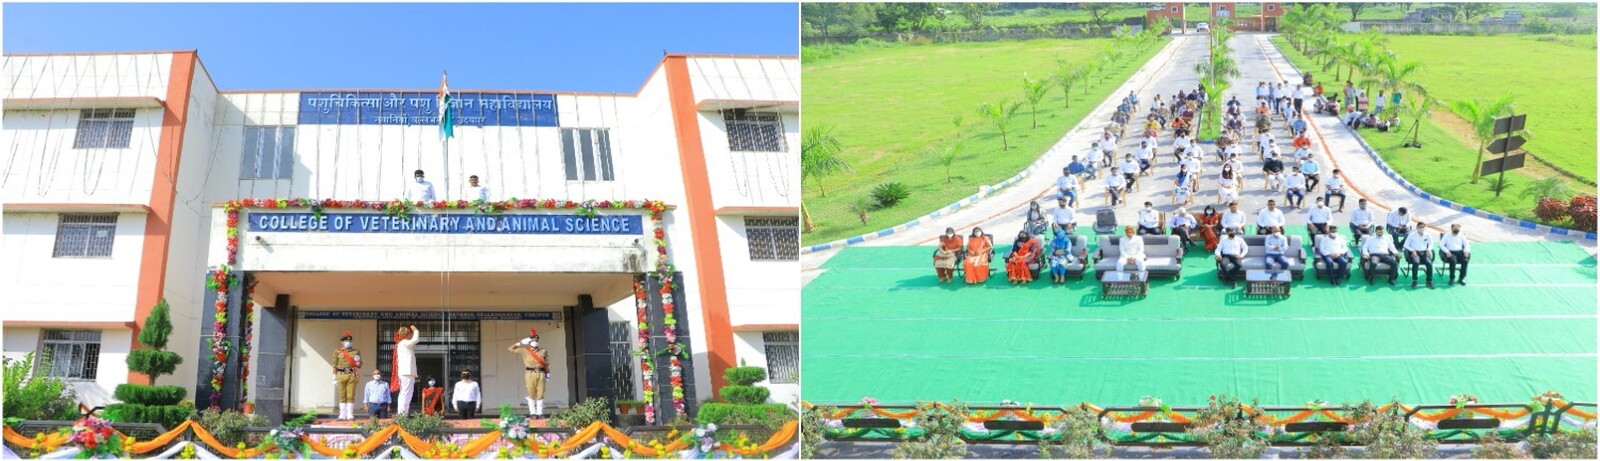 CVAS, Udaipur – College of Veterinary and Animal Sciences Udaipur